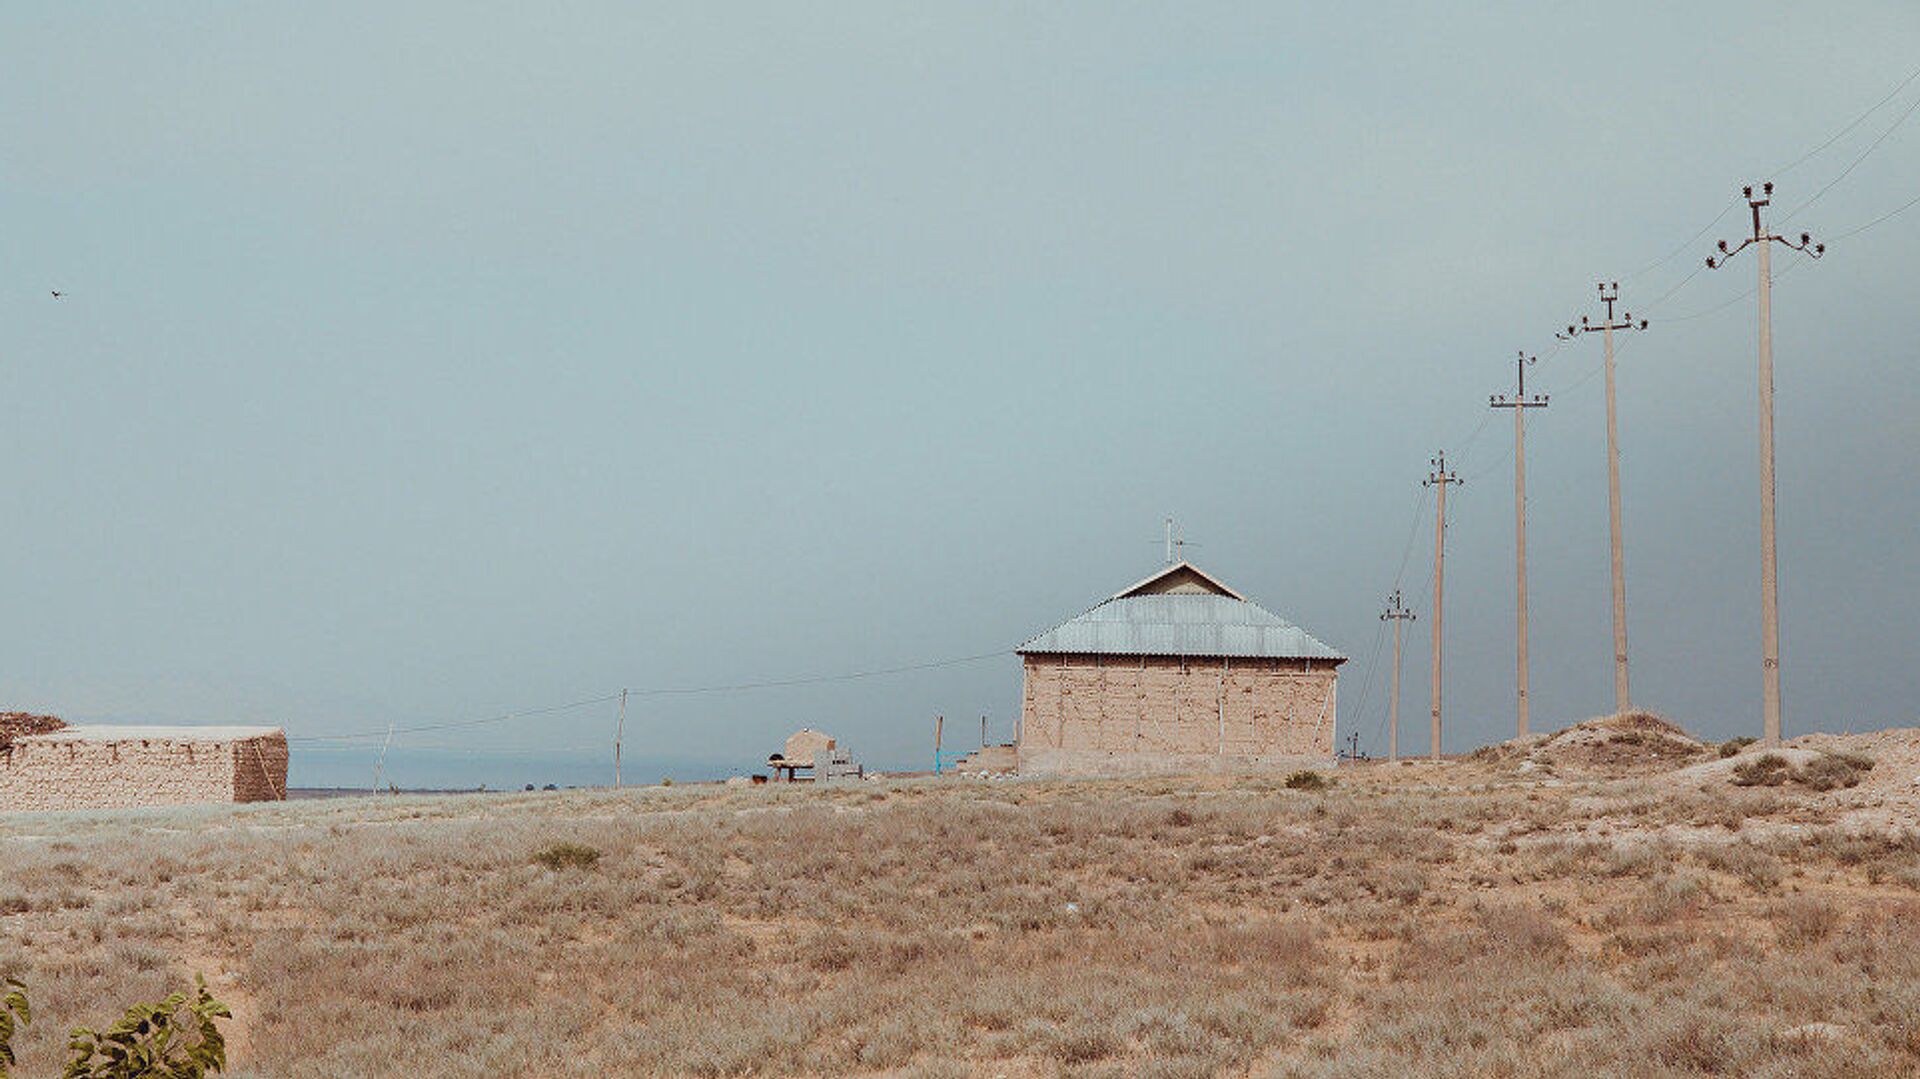 Заброшенные жилые дома в приграничном с Таджикистаном селе. Архивное фото - Sputnik Таджикистан, 1920, 09.11.2021